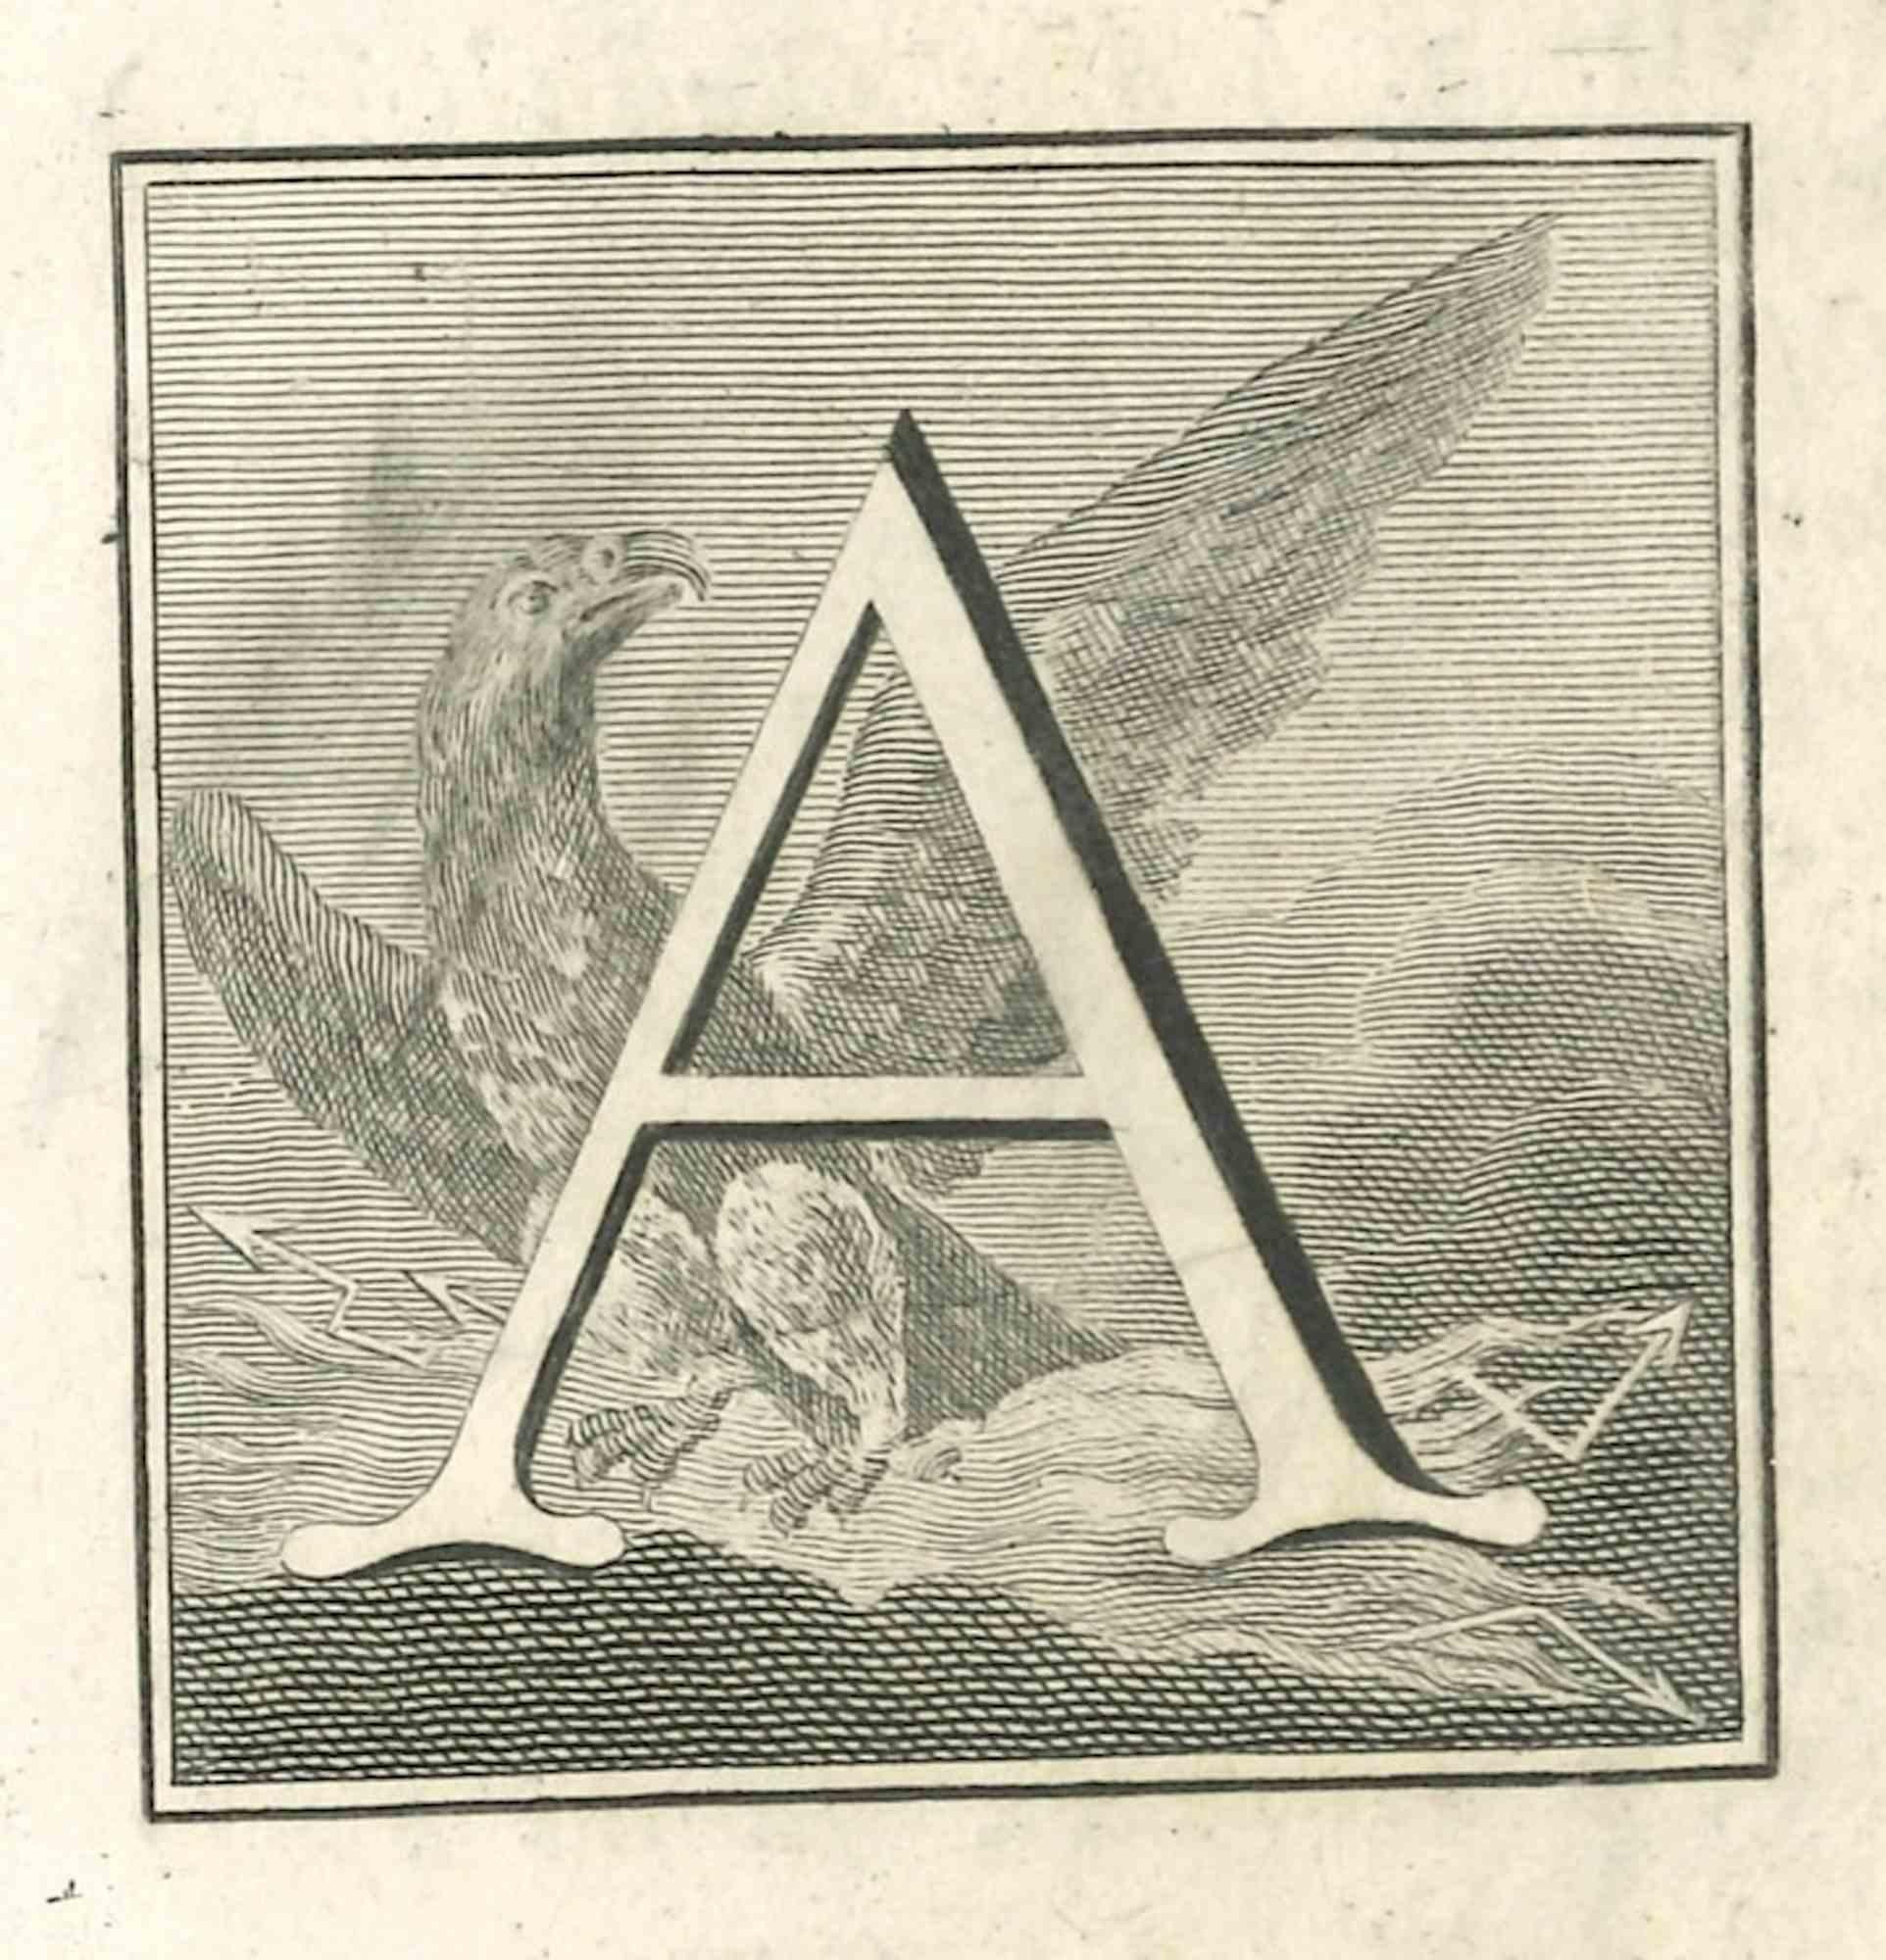 Lettre de l'alphabet A,  de la série "Antiquités d'Herculanum", est une gravure sur papier réalisée par divers auteurs au 18ème siècle.

Bonnes conditions.

La gravure appartient à la suite d'estampes "Antiquités d'Herculanum exposées" (titre